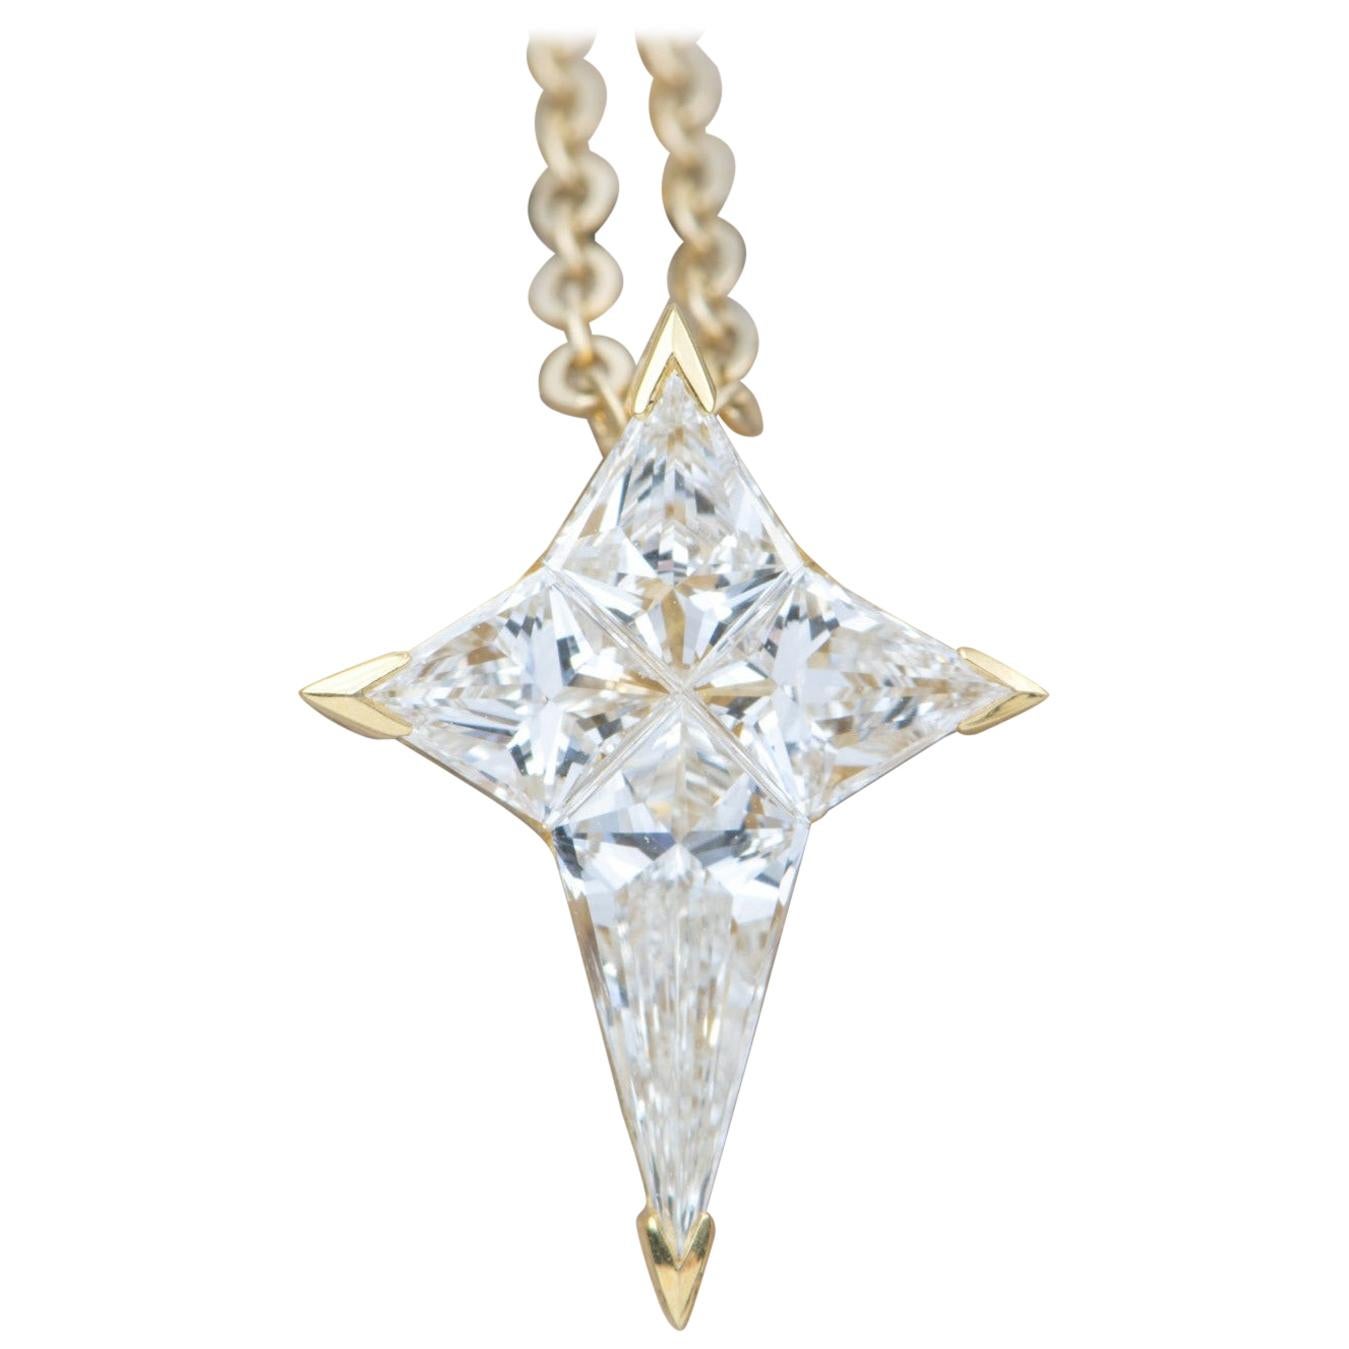 Diamond Star 18k Yellow Gold Pendant Necklace Invisible Setting Unique AD1922v1